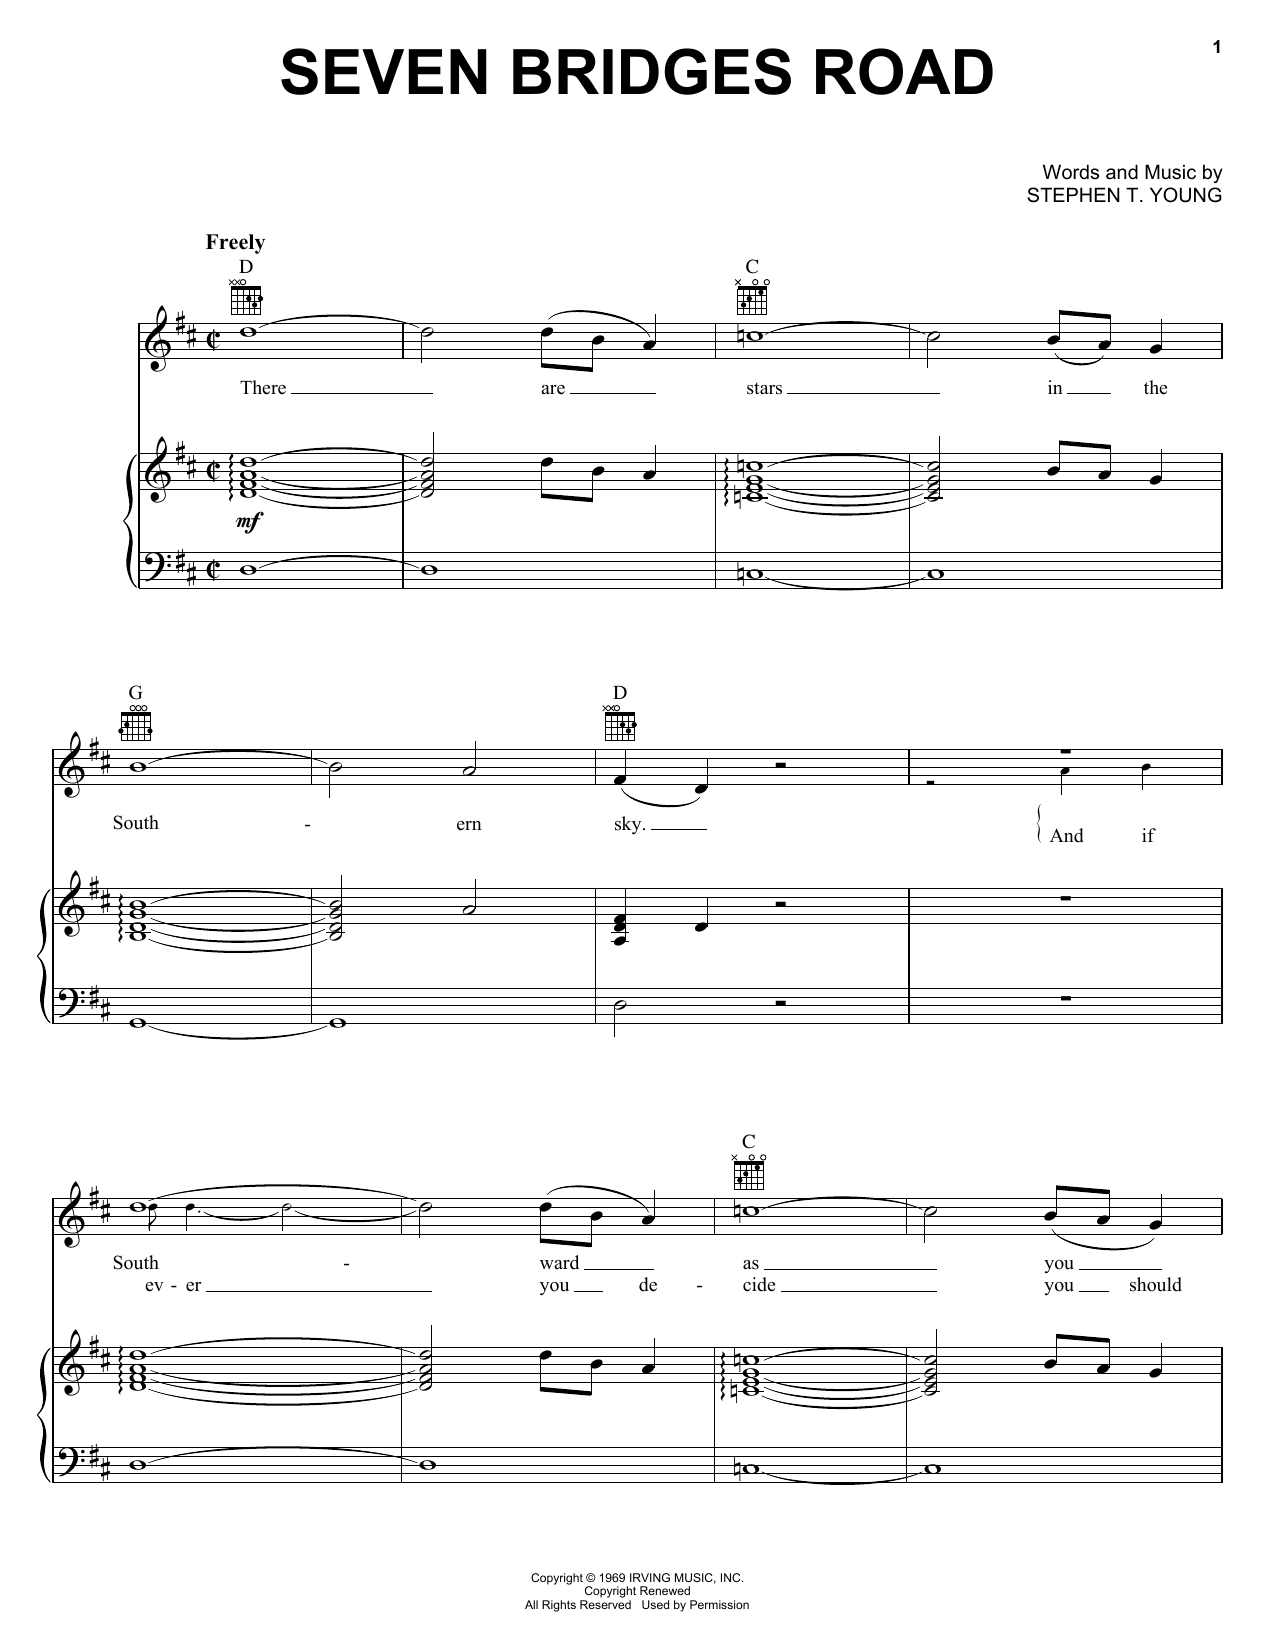 Eagles Seven Bridges Road Sheet Music Notes & Chords for Ukulele - Download or Print PDF